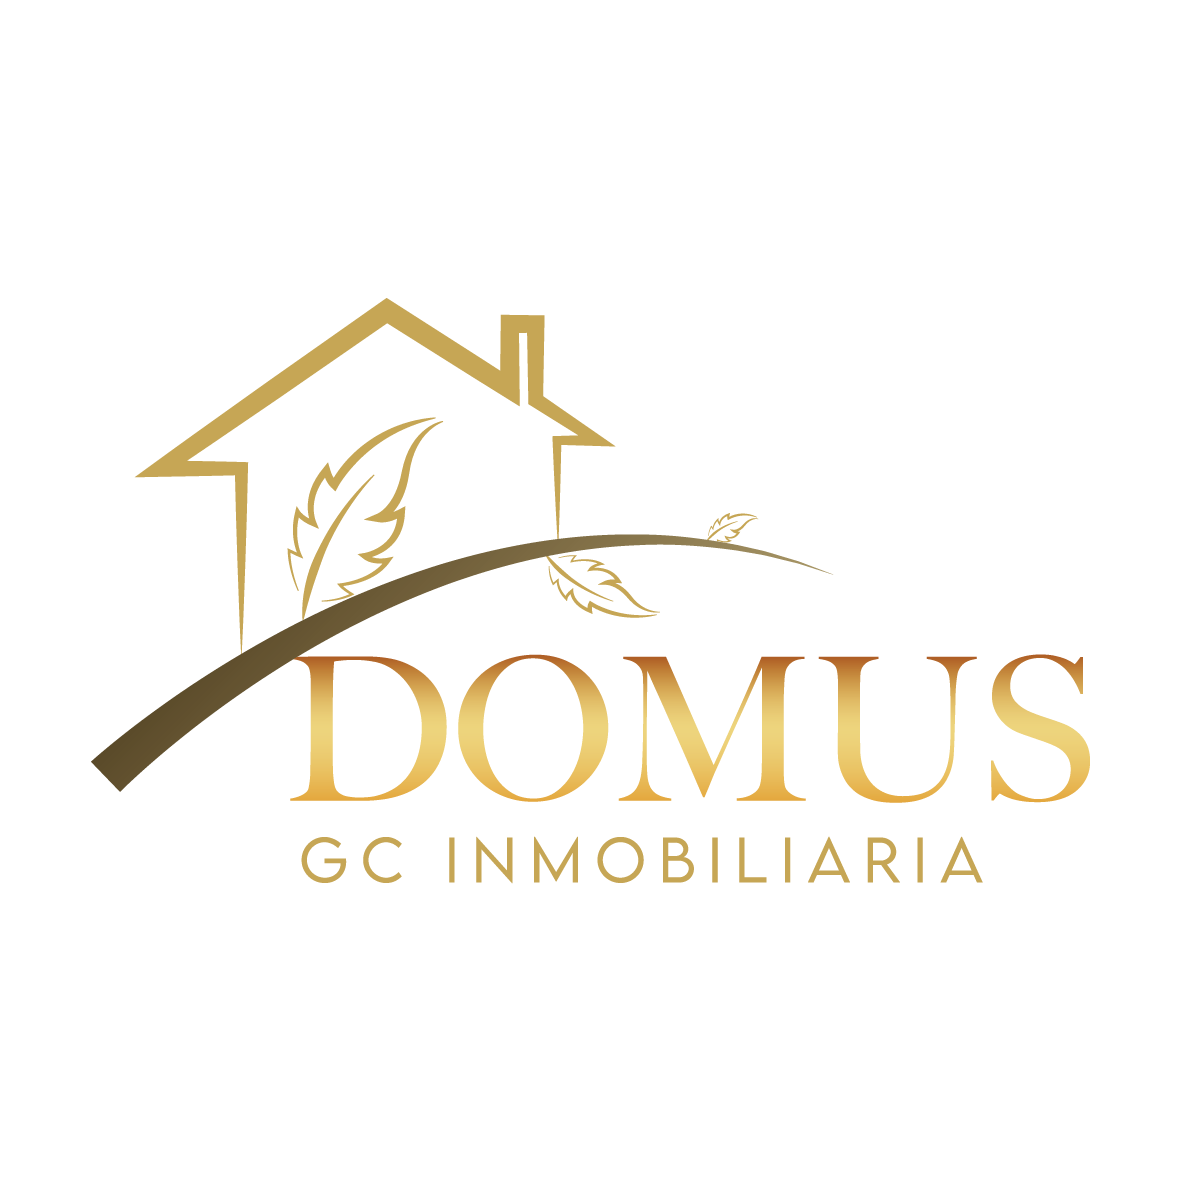 Domus GC Inmobiliaria Logo